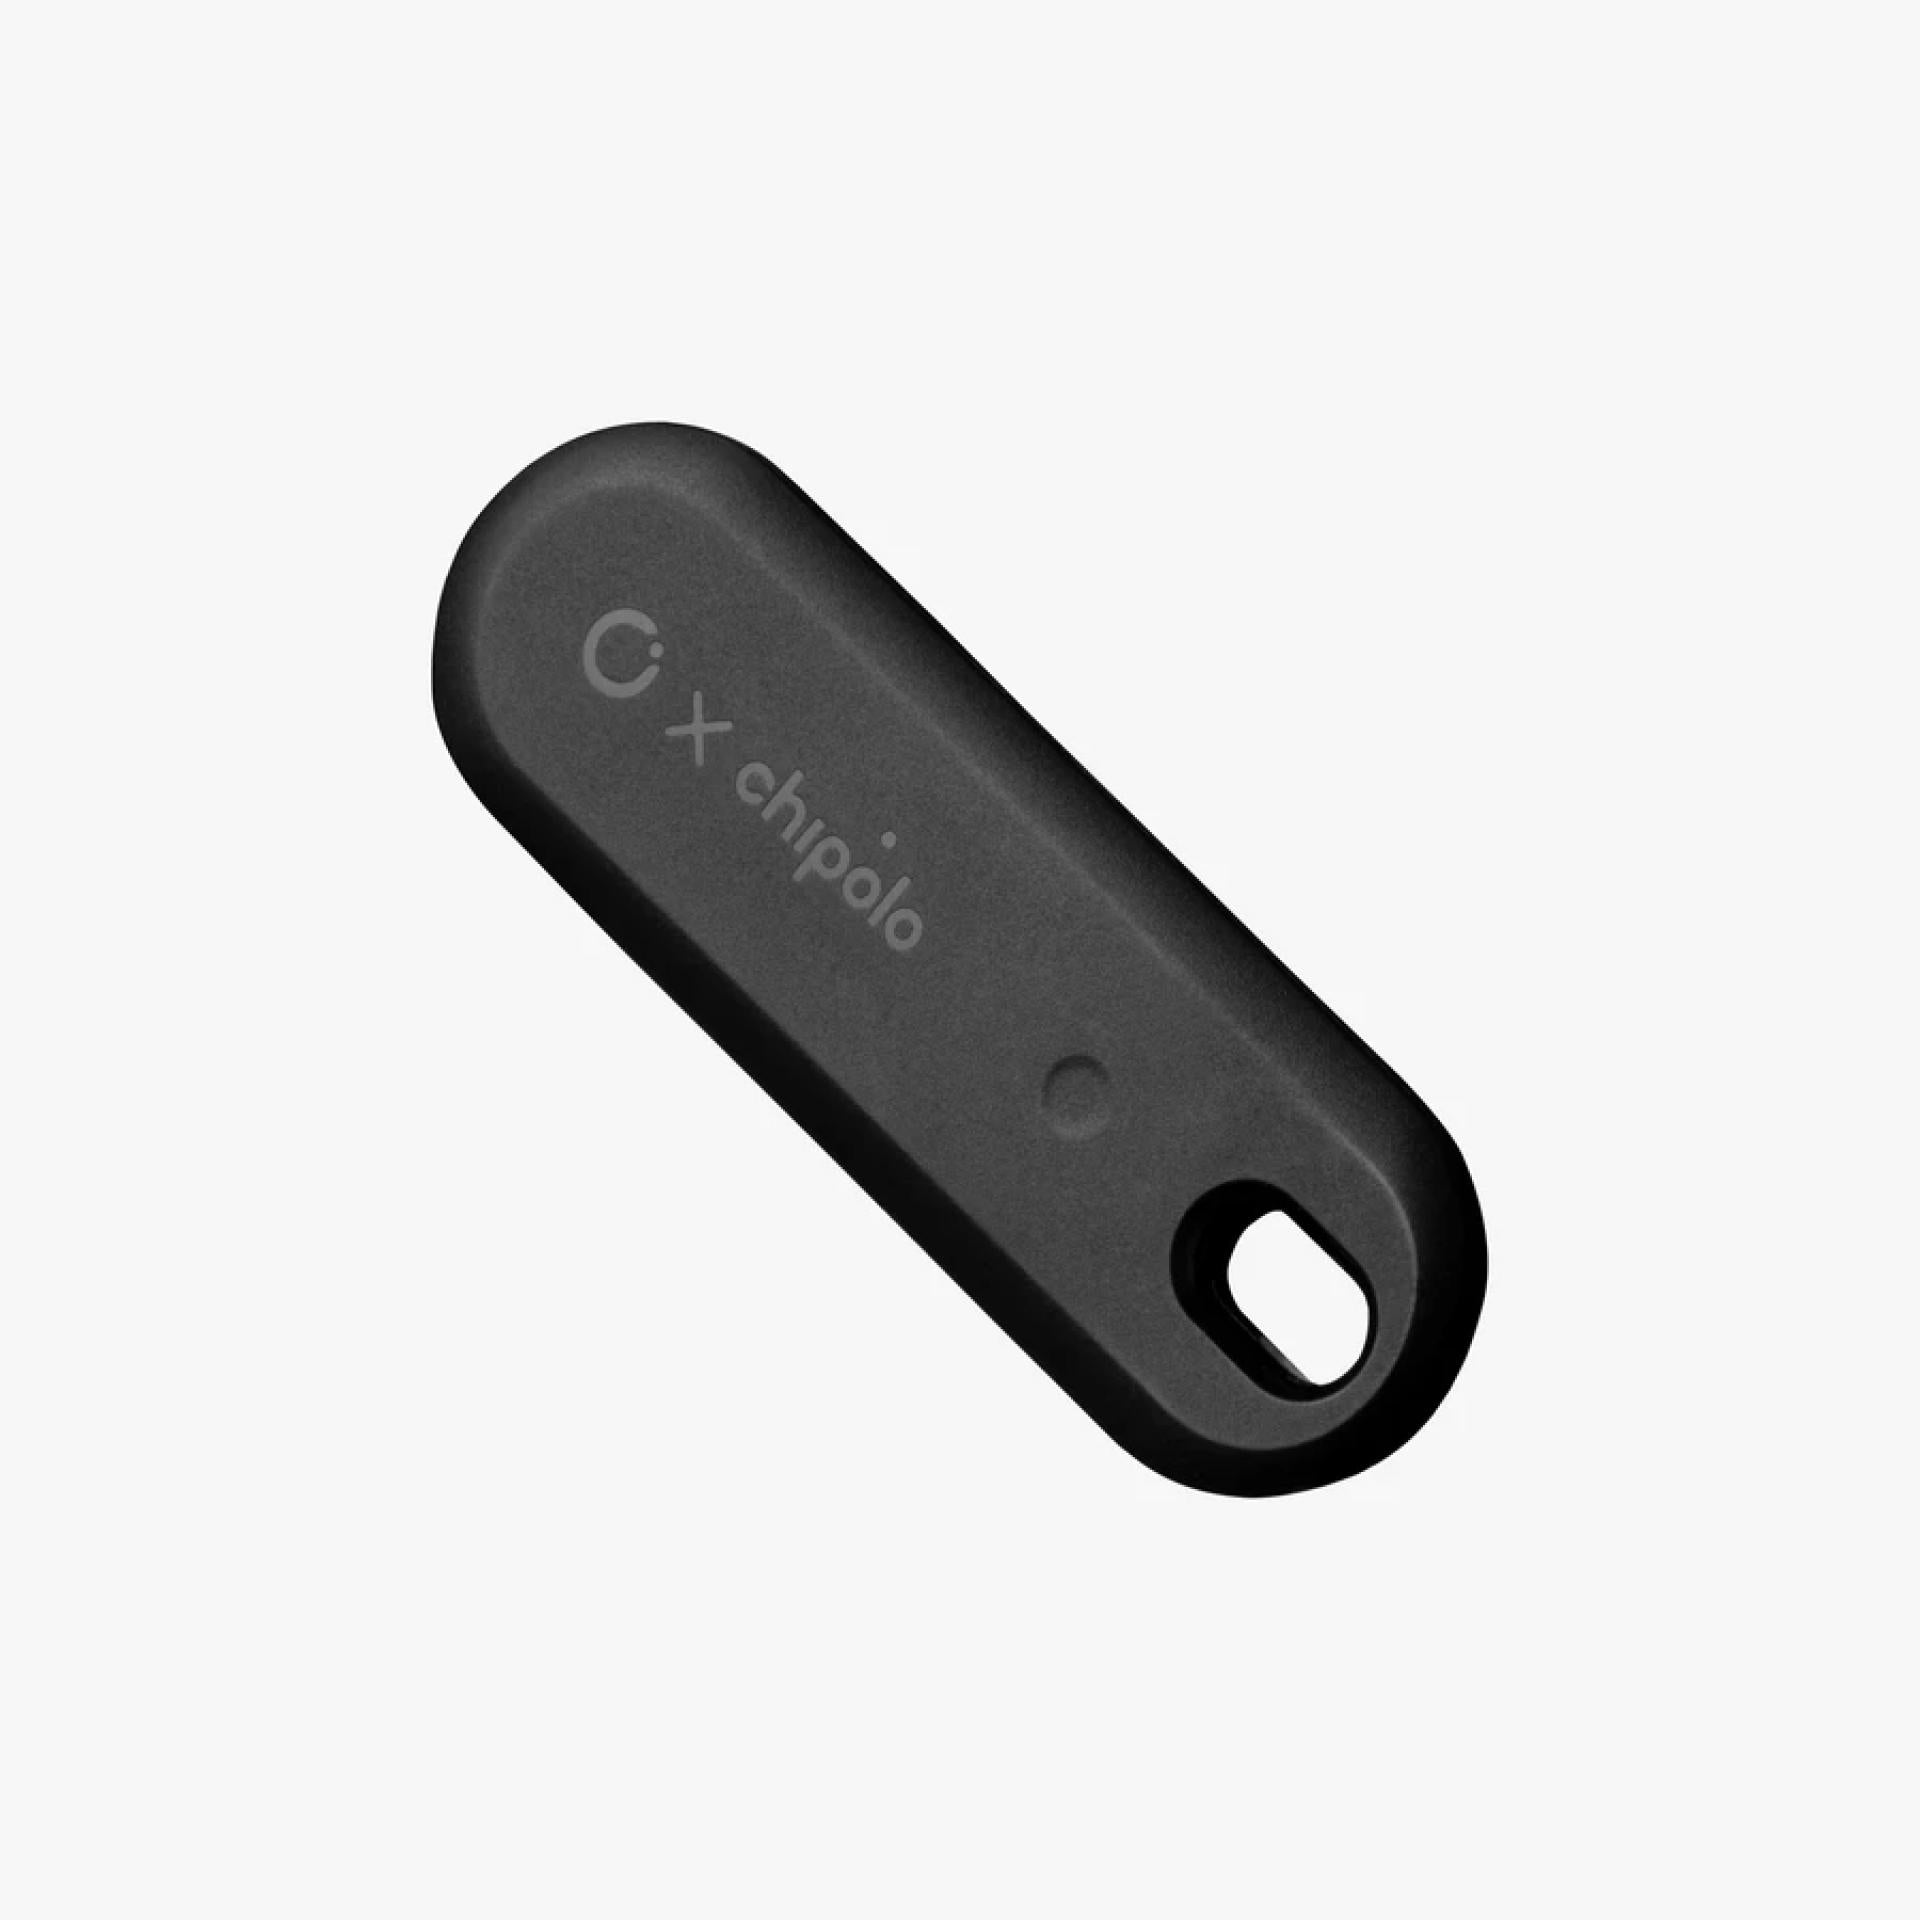 Orbitkey x Chipolo Schlüsselfinder Bluetooth Tracker Schwarz